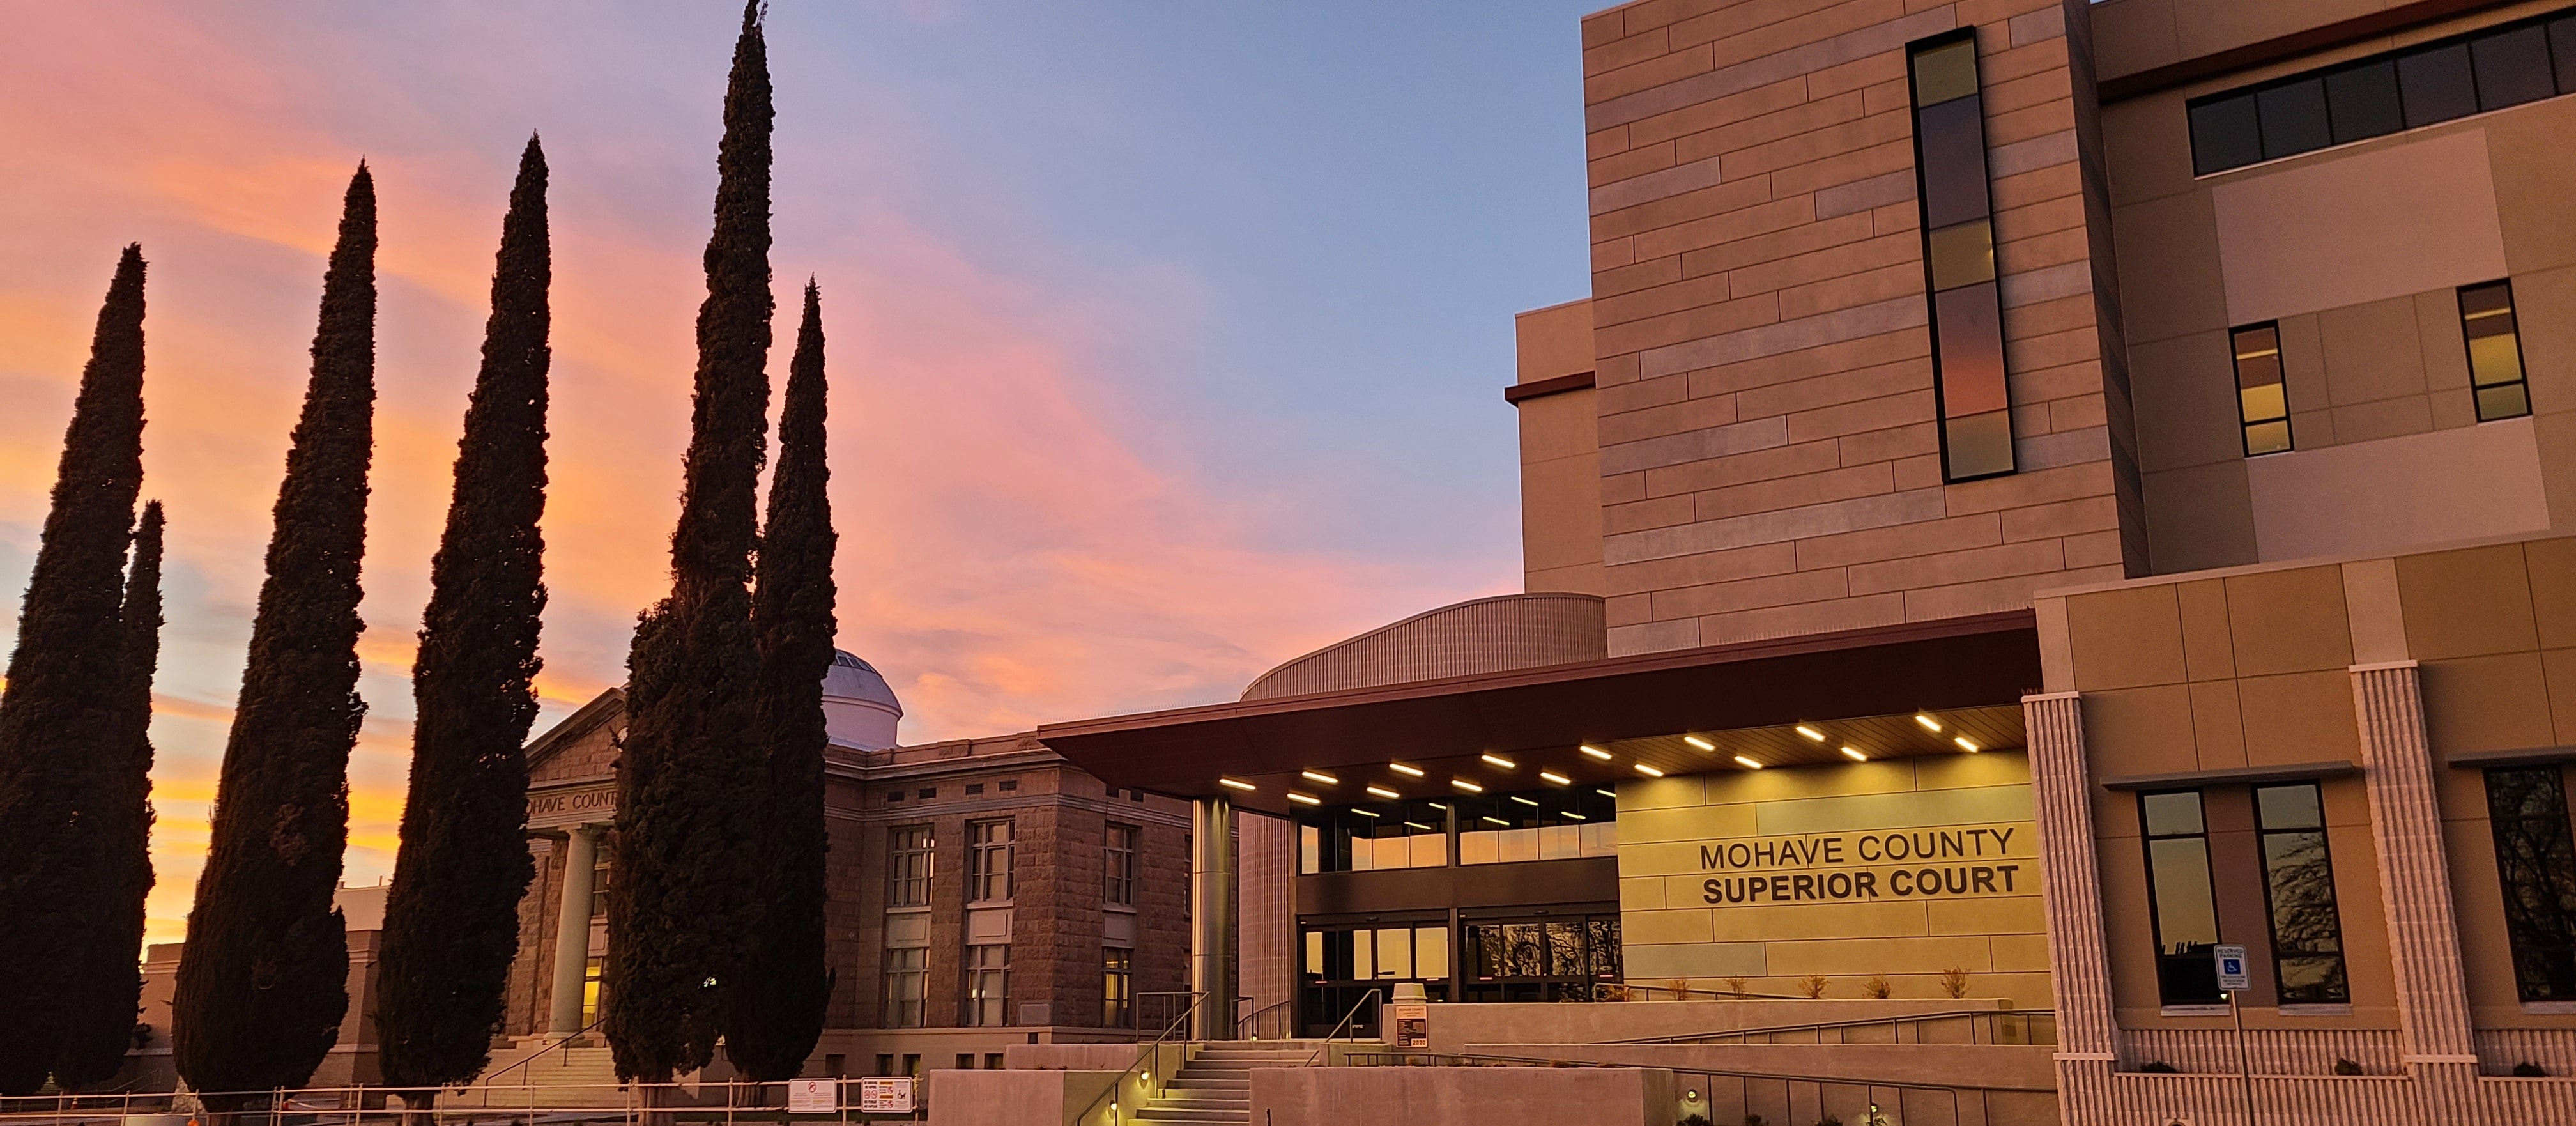 Neues Gerichtsgebäude in Arizona ermöglicht nahtlose Kommunikation mit einer hochmodernen AV-Lösung